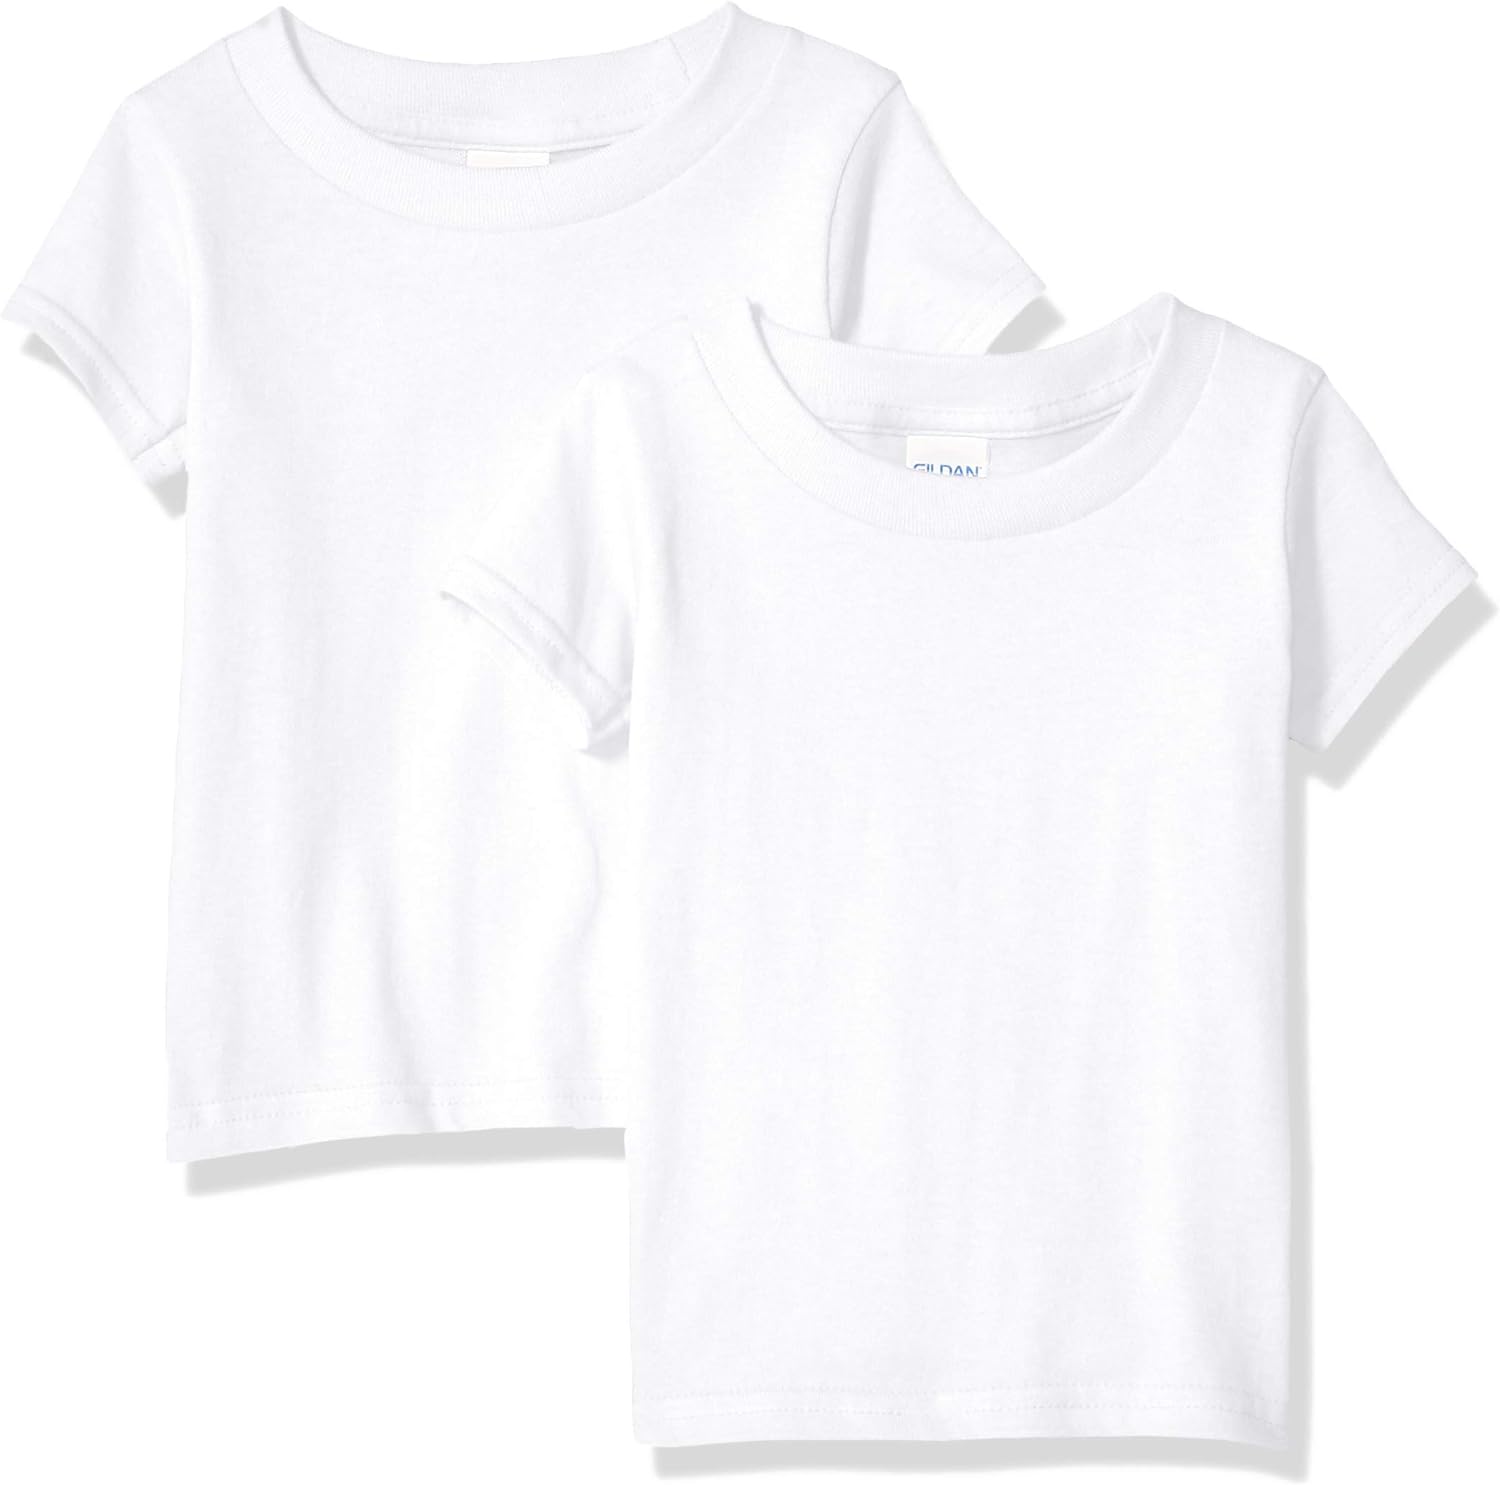 Gildan Kids' 2-Pack T-Shirt Black/White